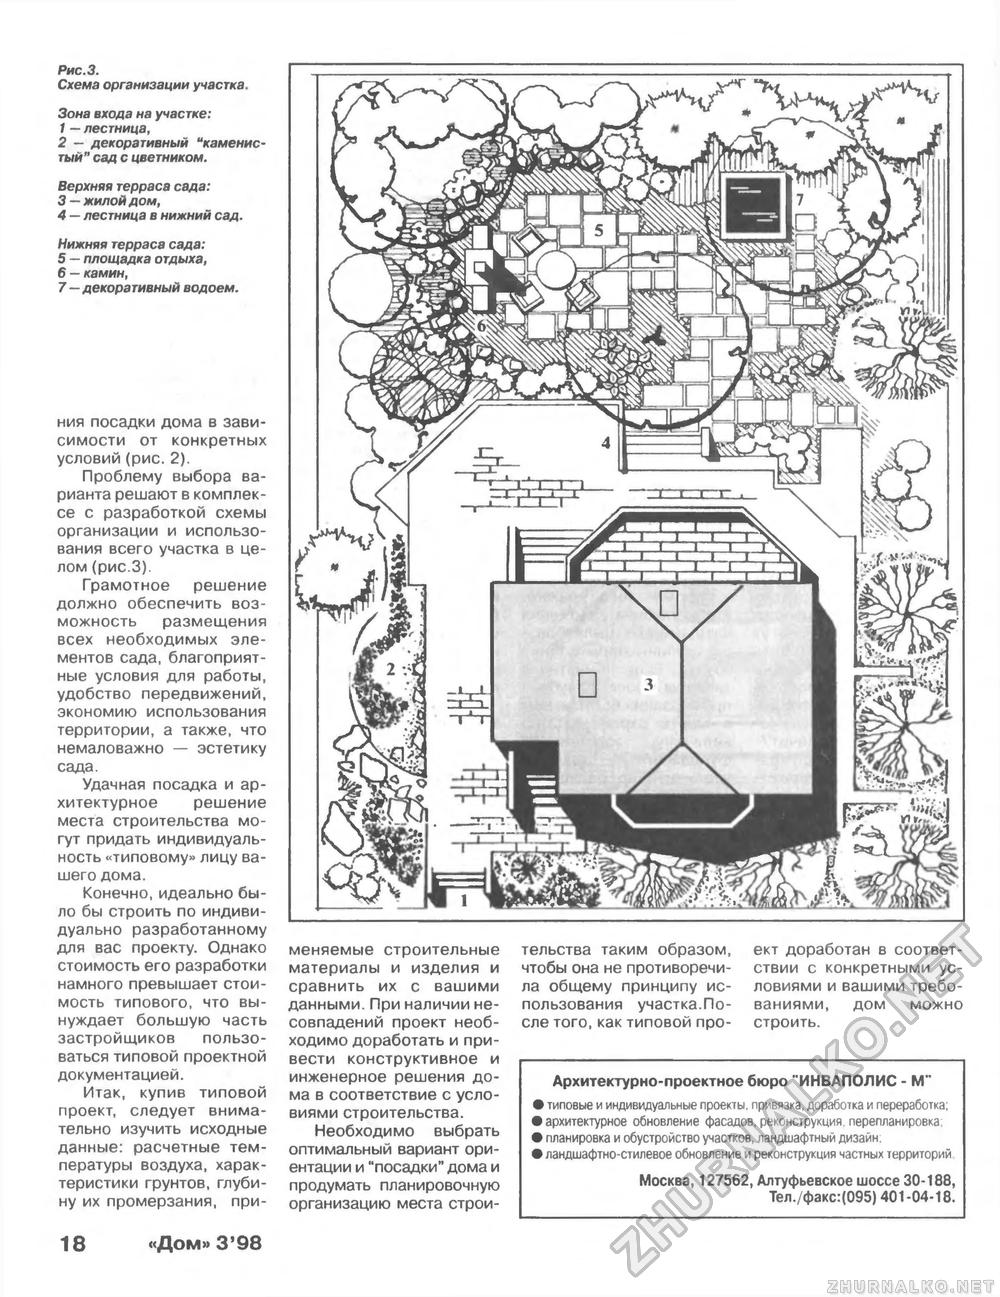 Дом 1998-03, страница 18